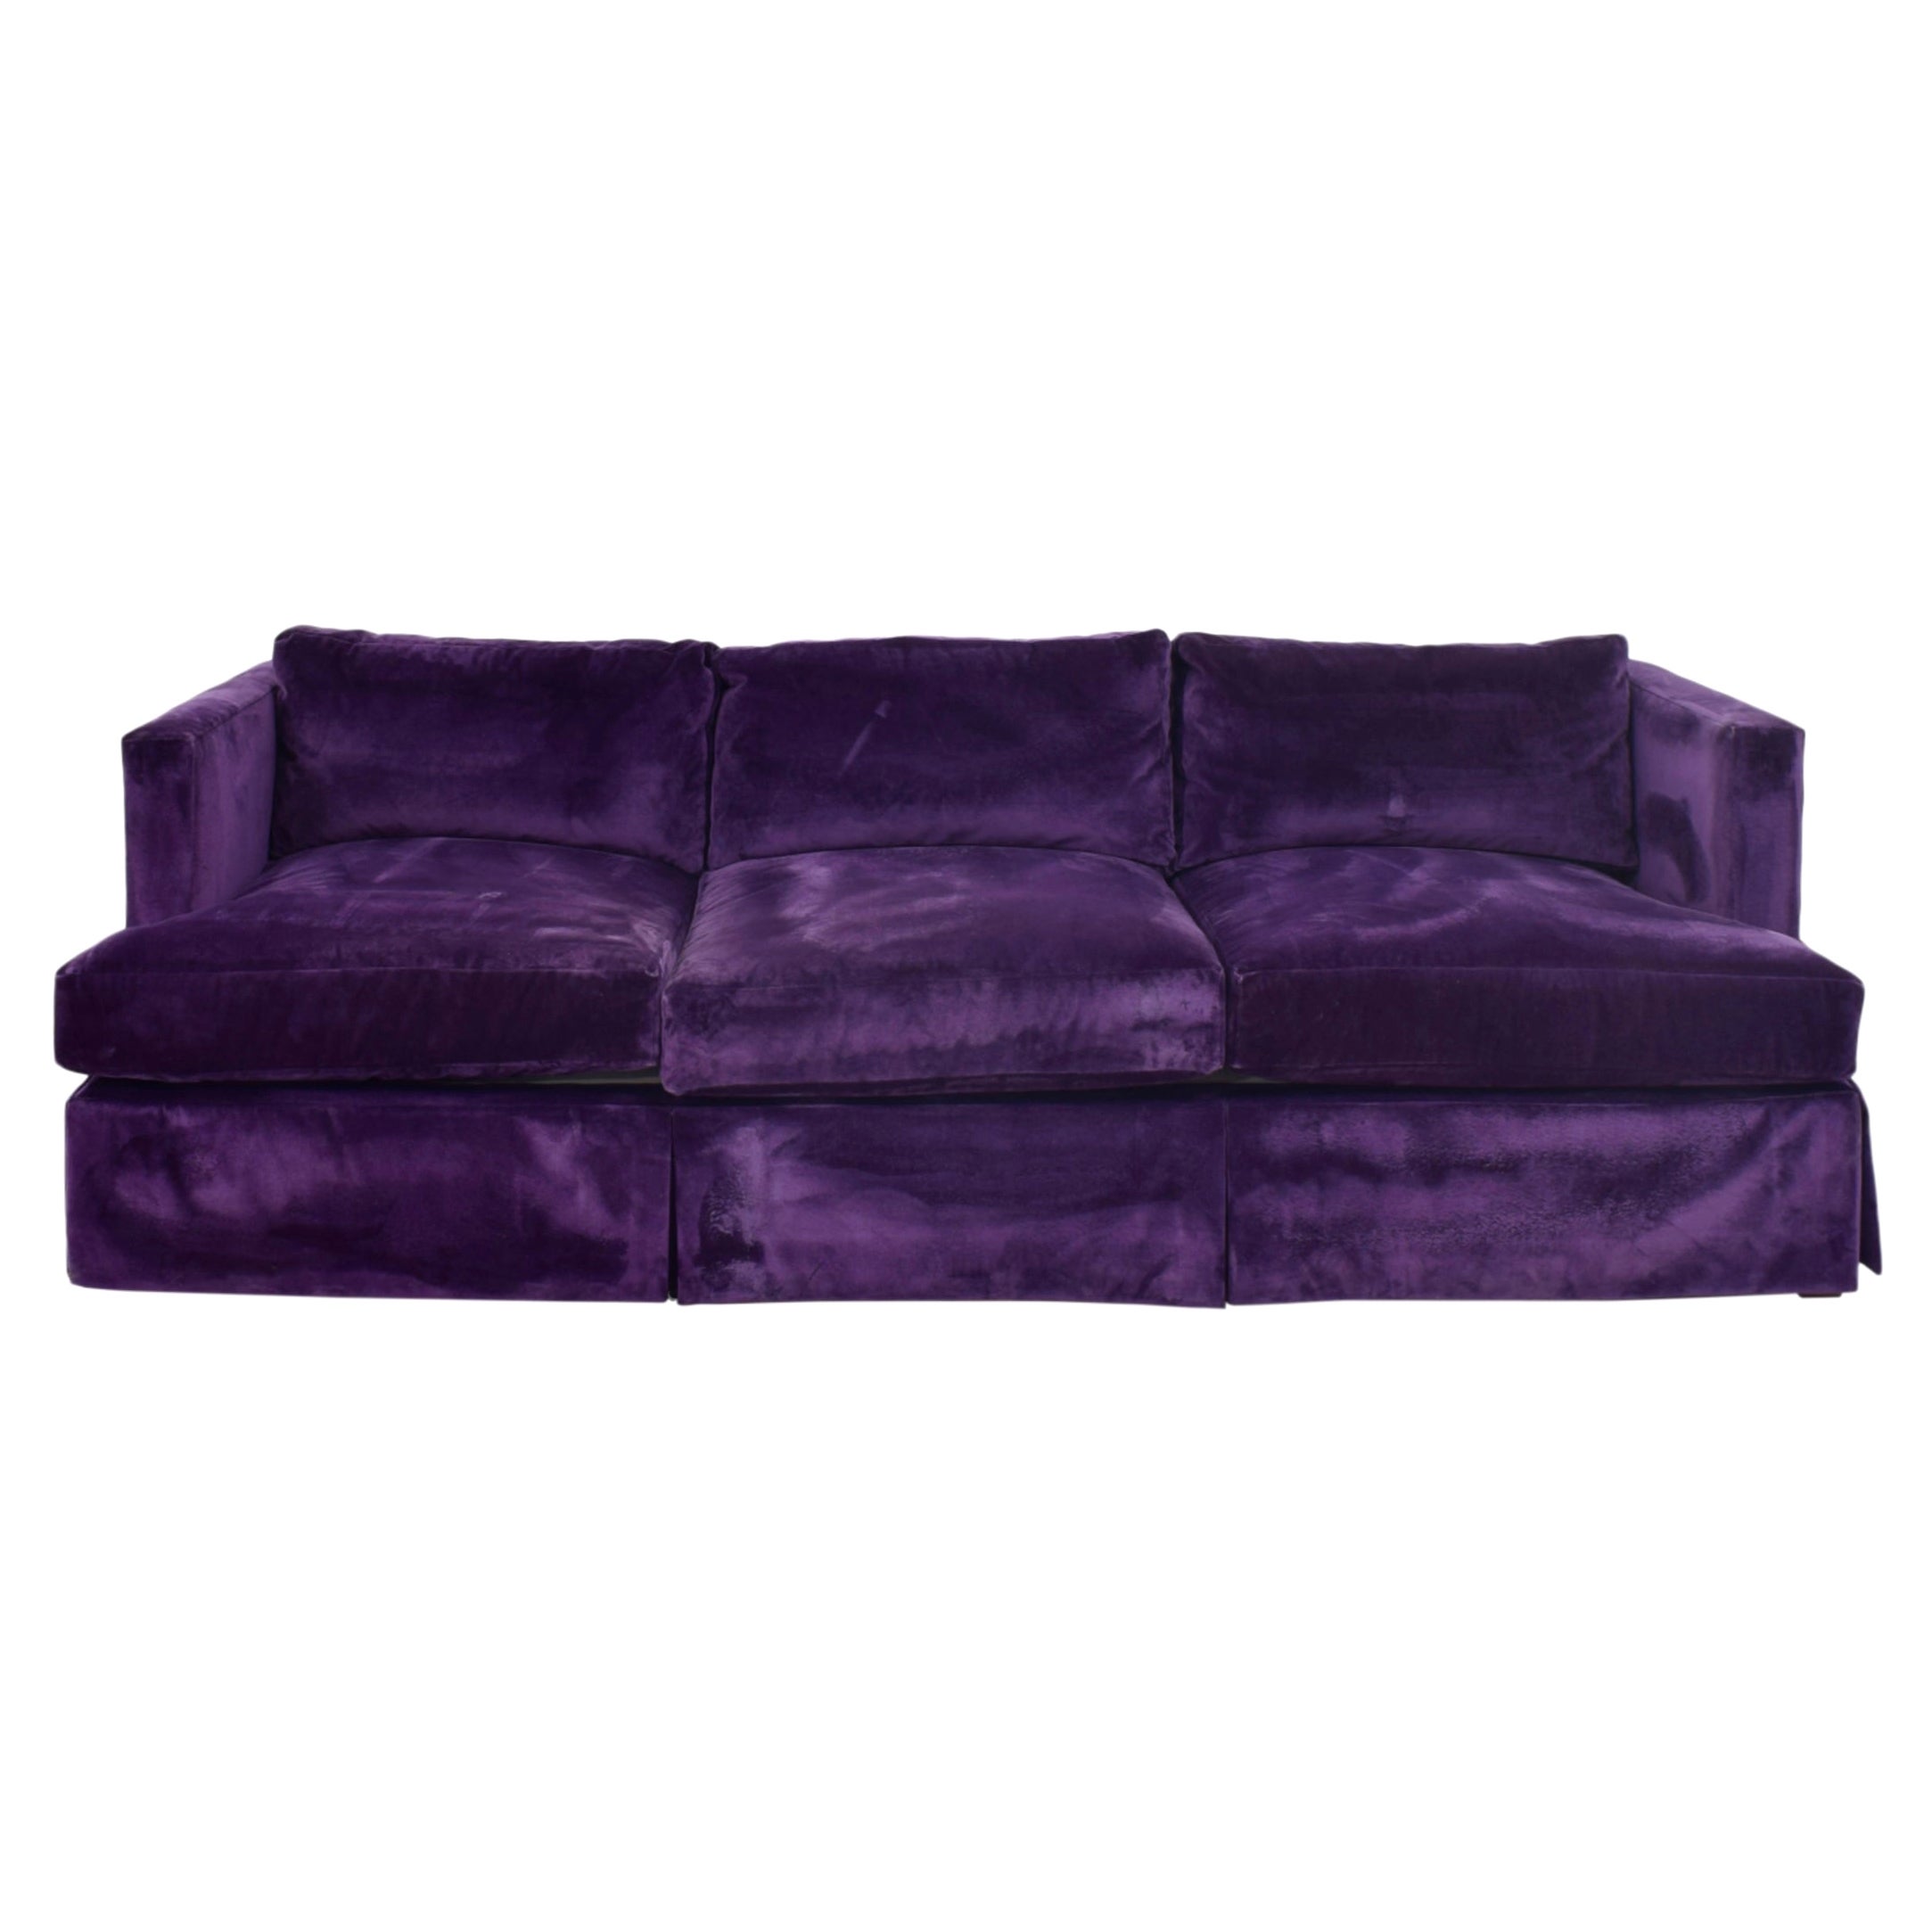 Barbara Barry for Hendredon Royal Purple Skirted Velvet Three-Seat Sofa